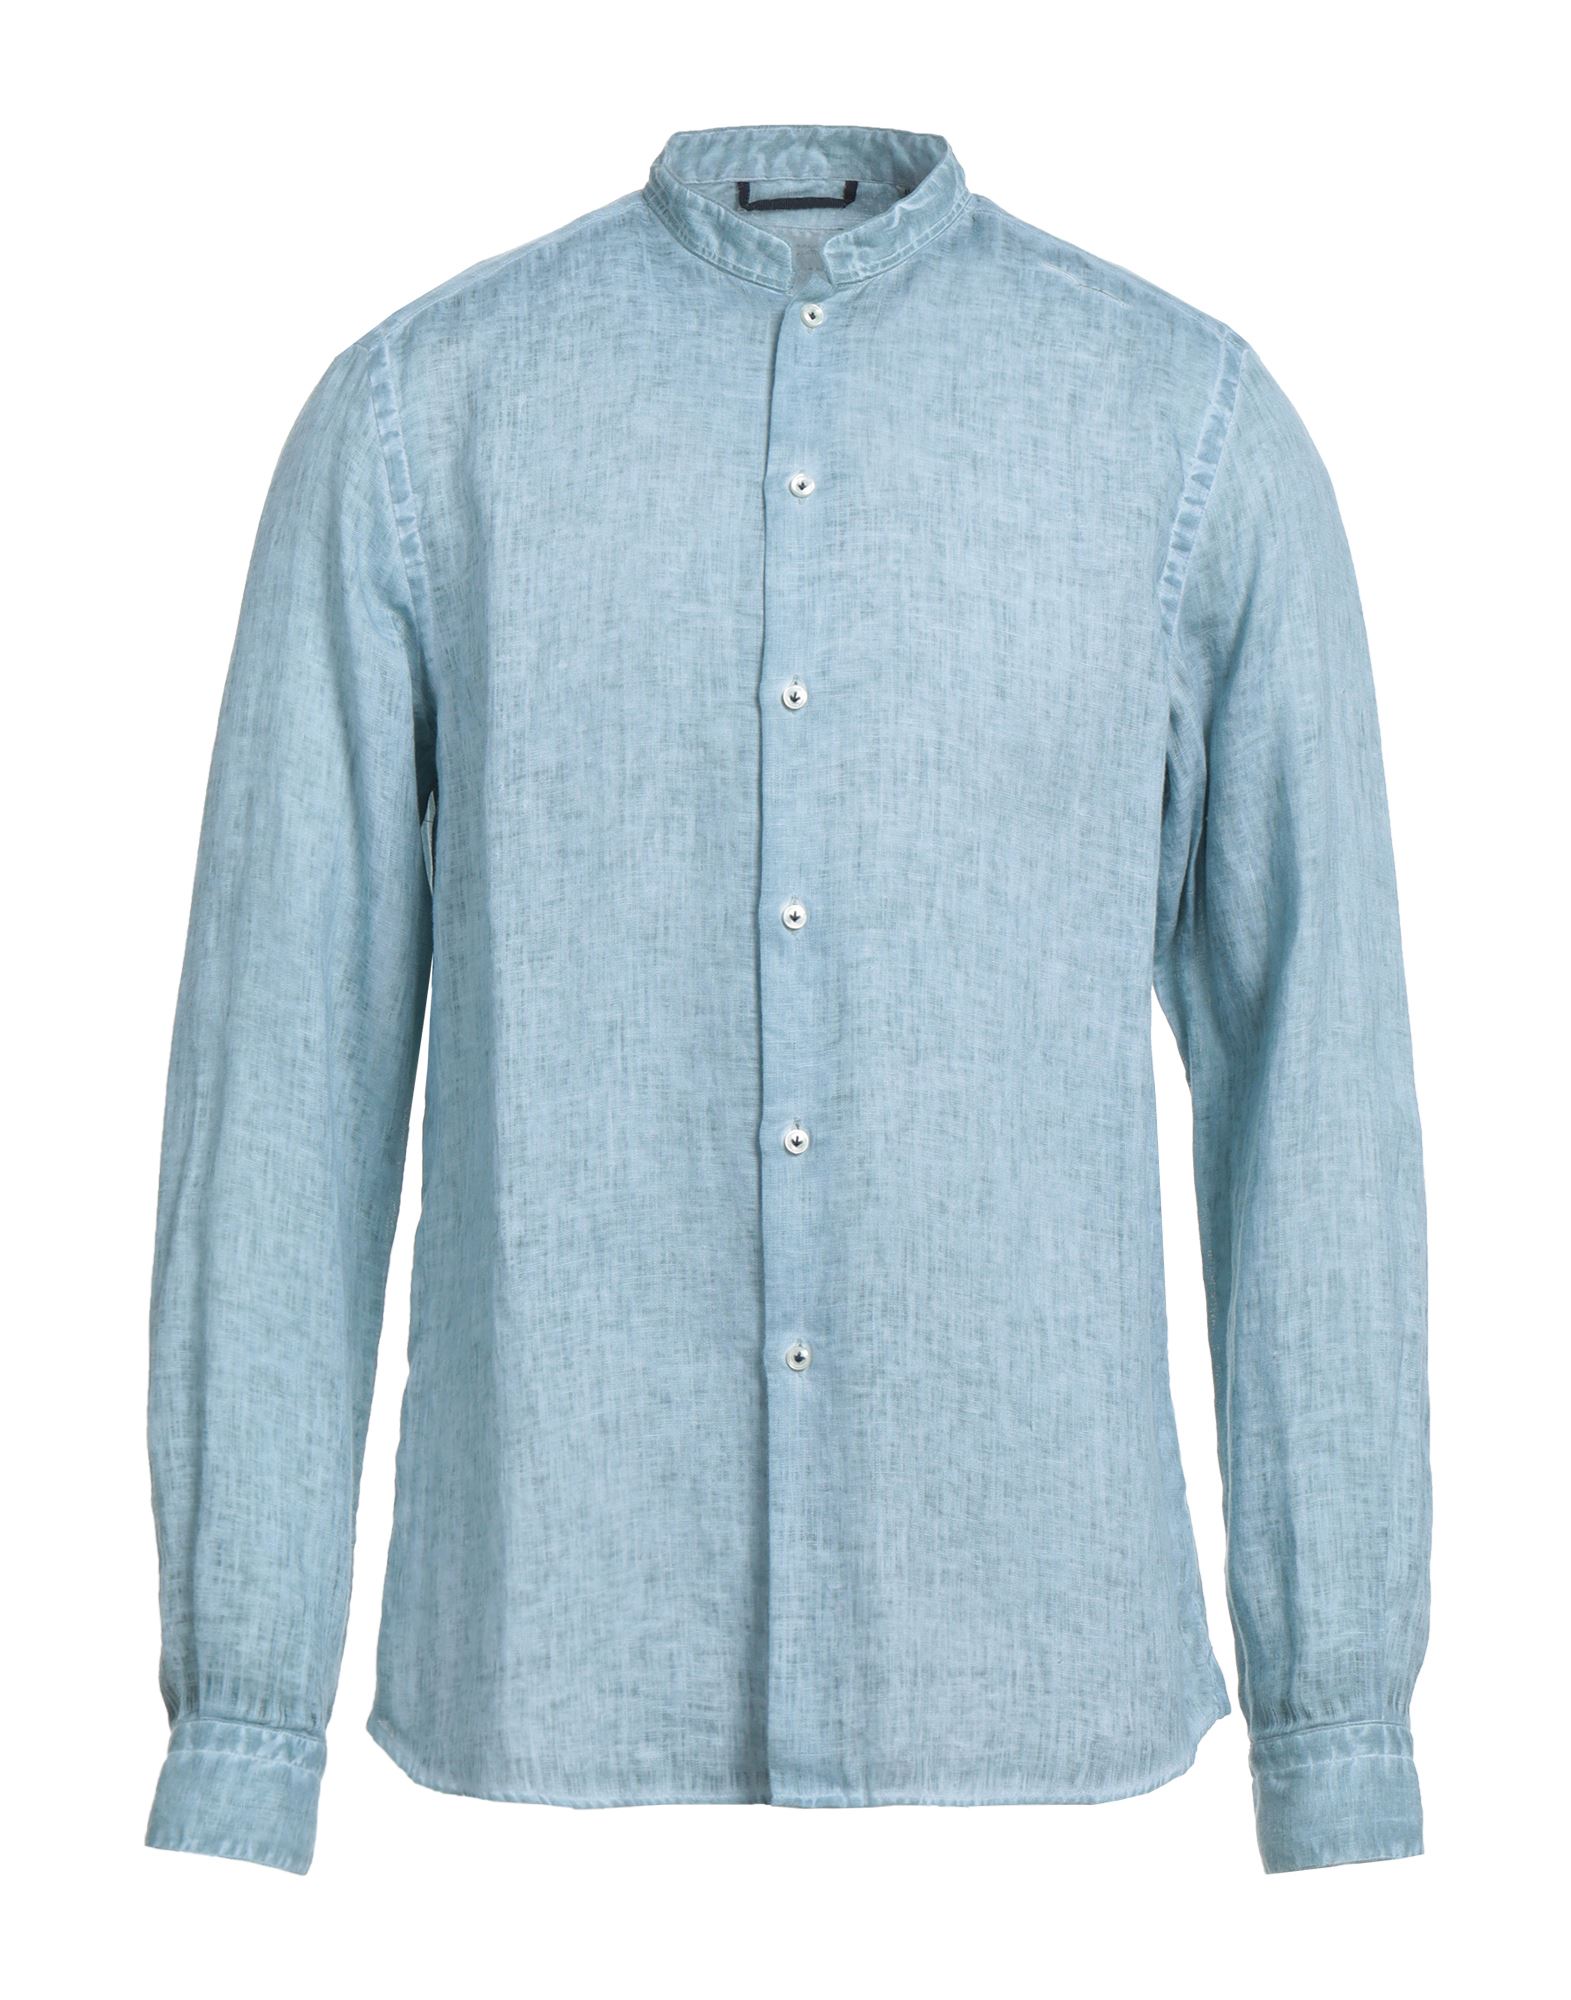 Ploumanac'h Man Shirt Light Blue Size 16 ½ Linen